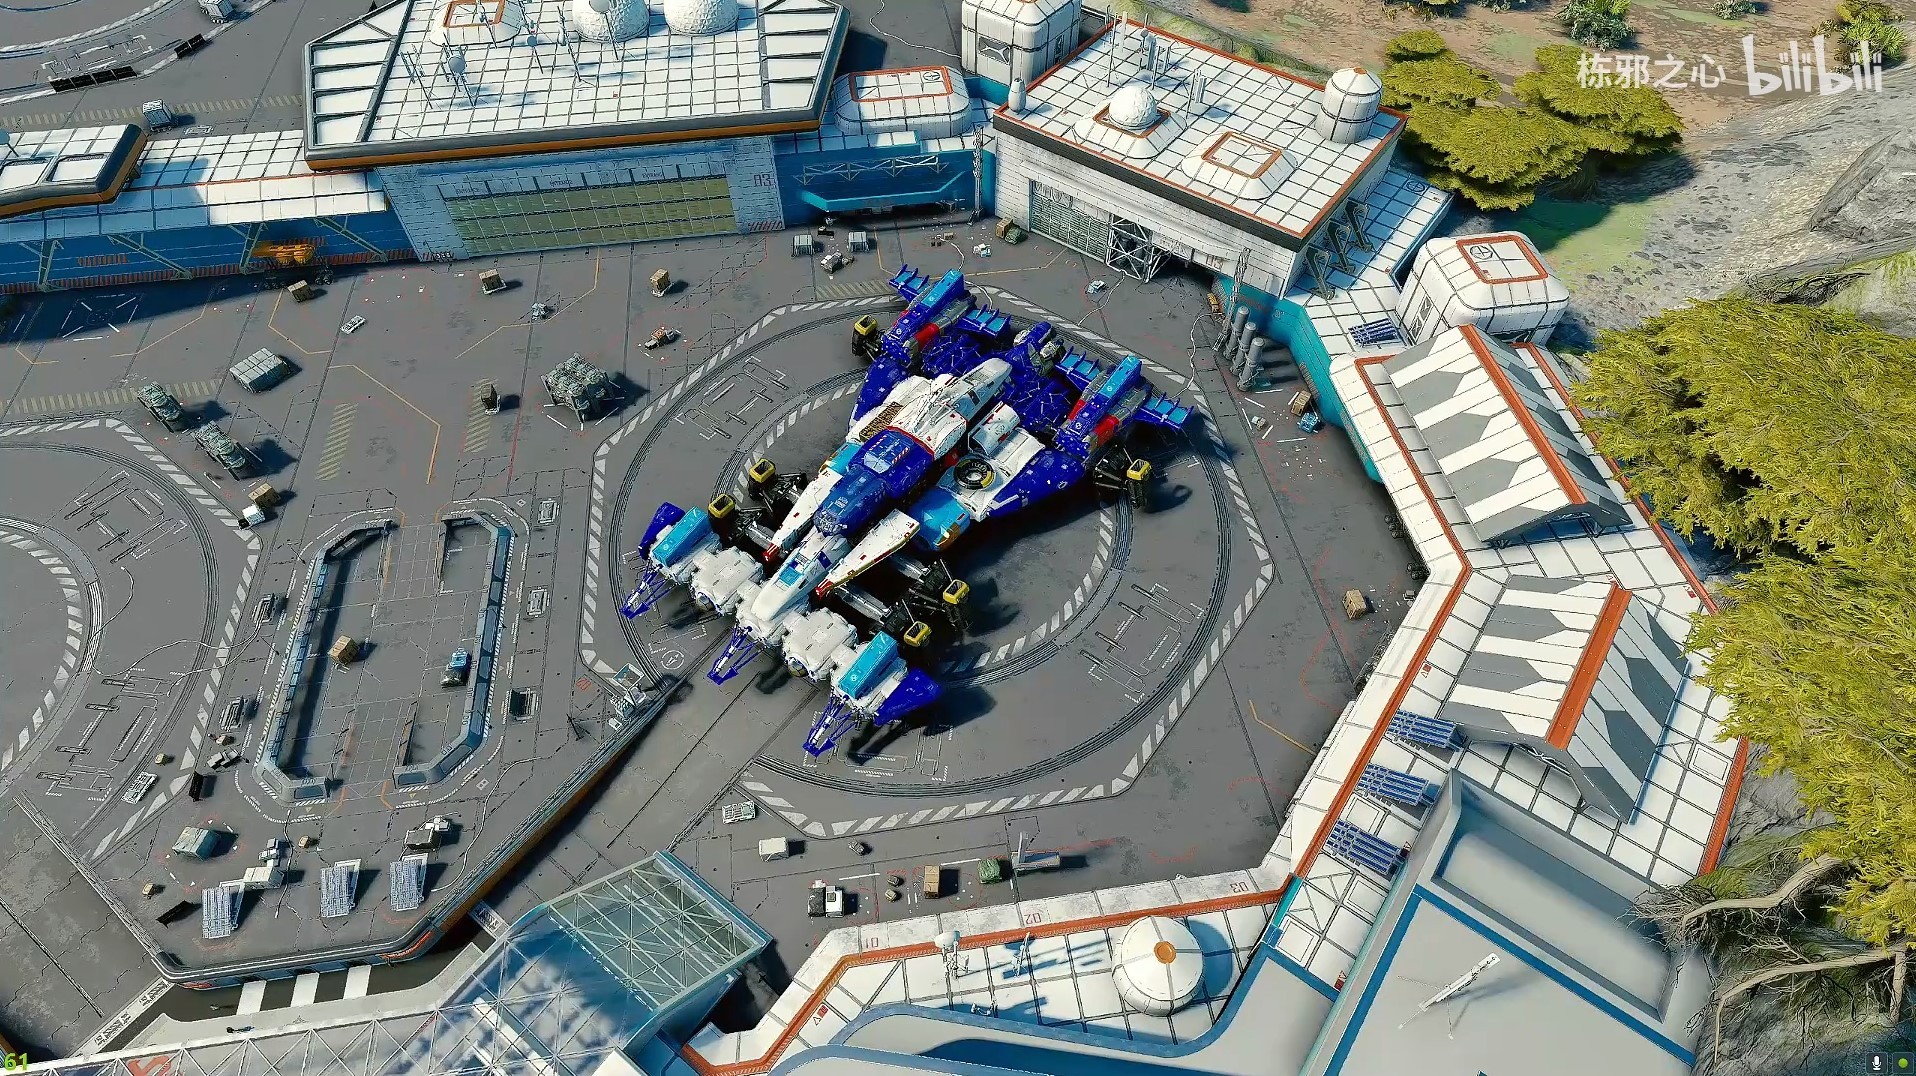 《星空》高智能方程式賽車阿斯拉達號飛船組裝展示 - 第1張